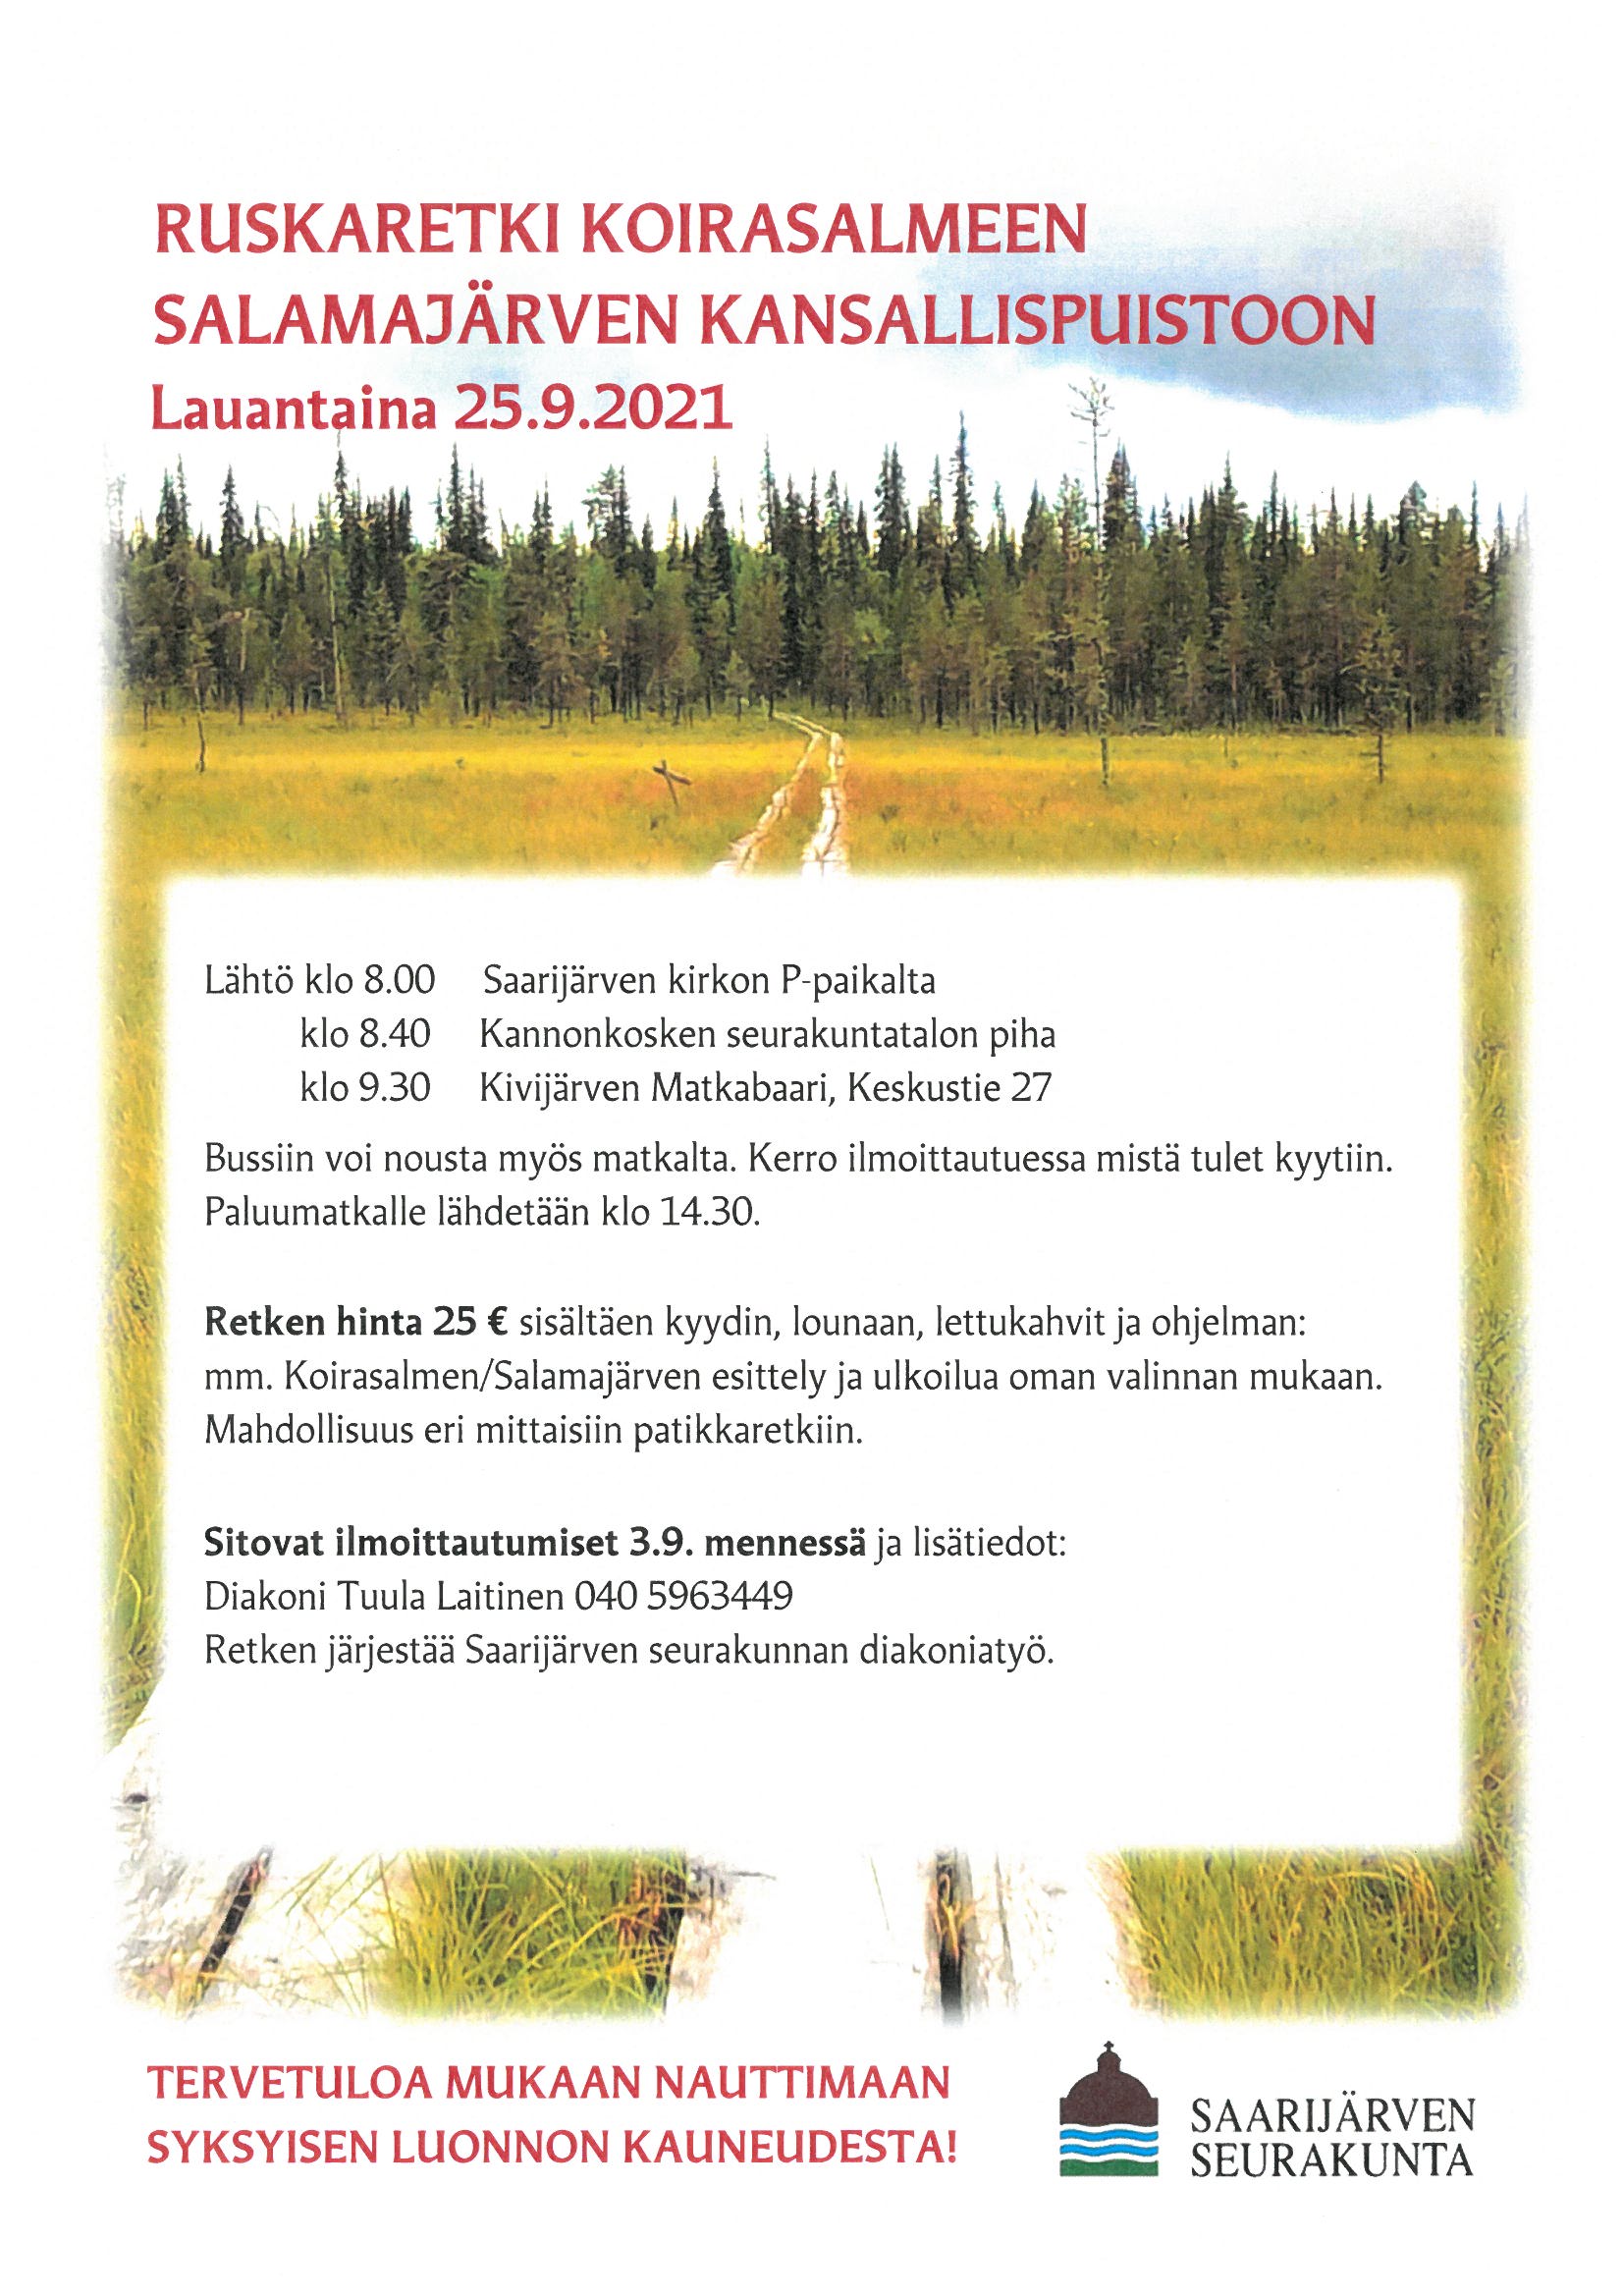 Ruskaretki Koirasalmeen Salamajärven kansallispuistoon 25.9.2021